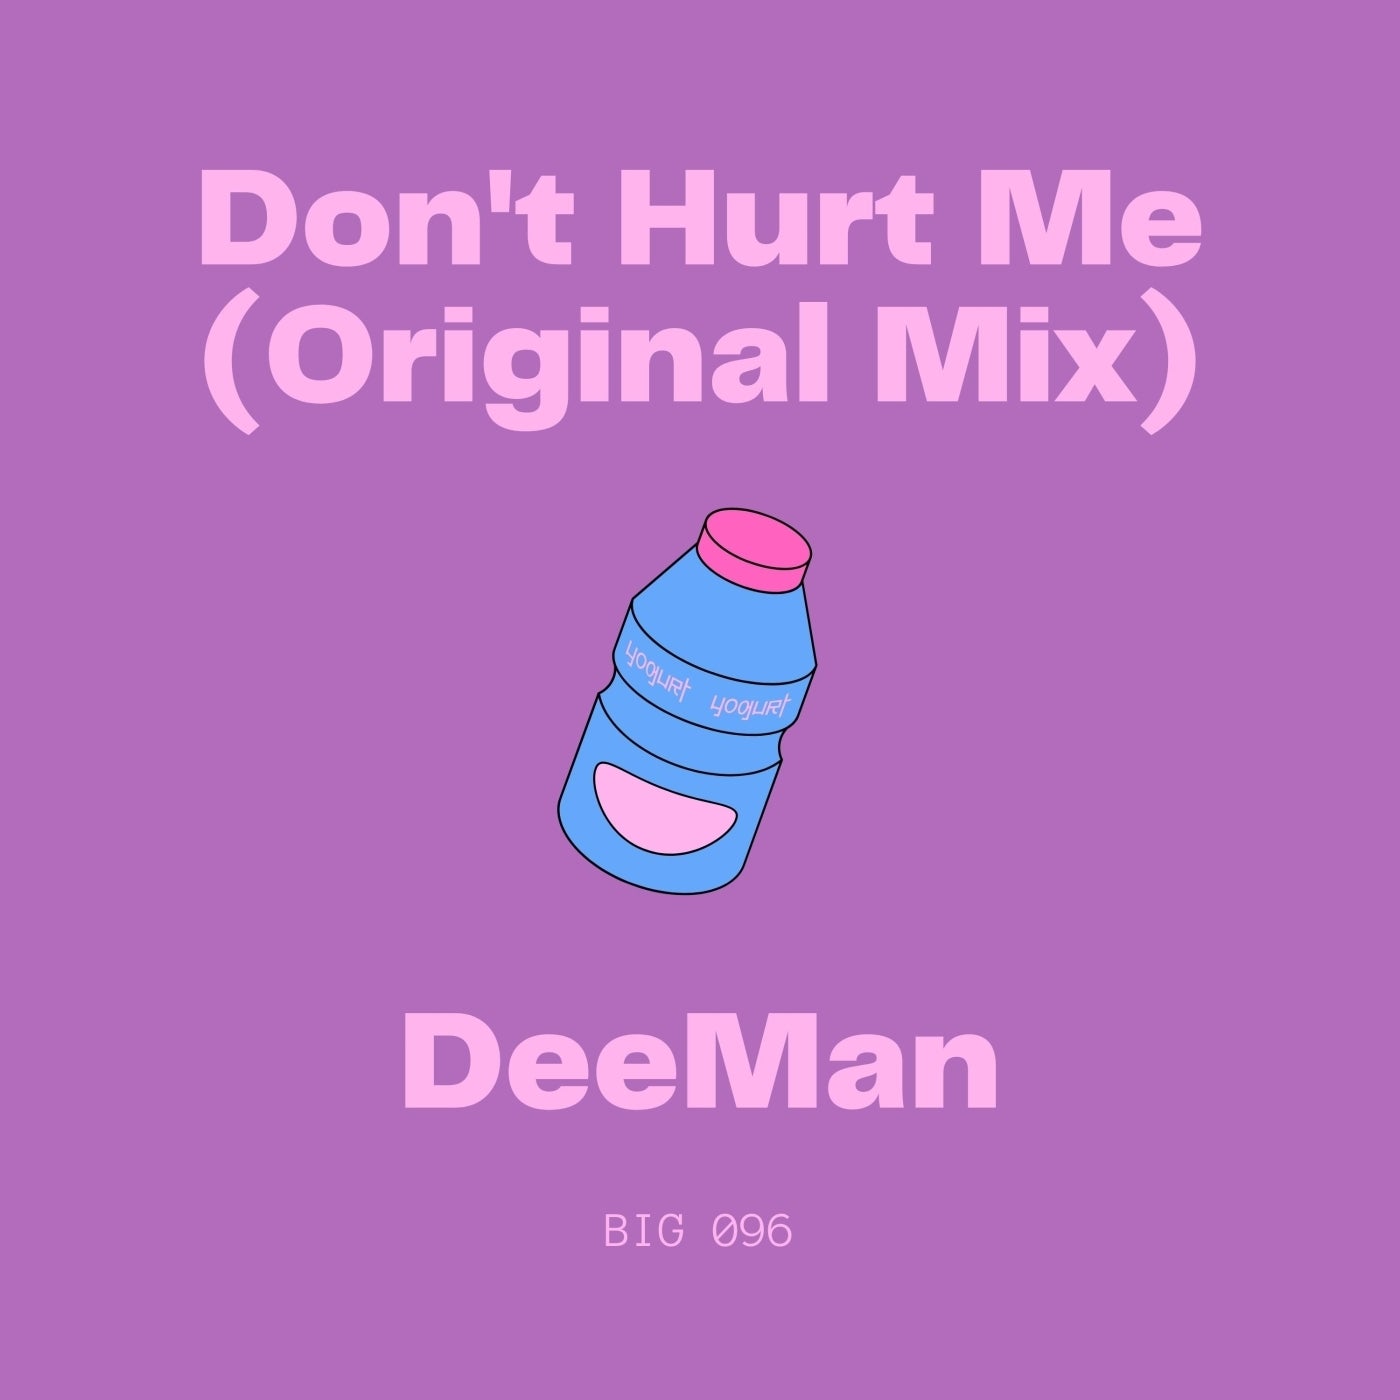 D.e.eMan - Don't Hurt Me (Original Mix)